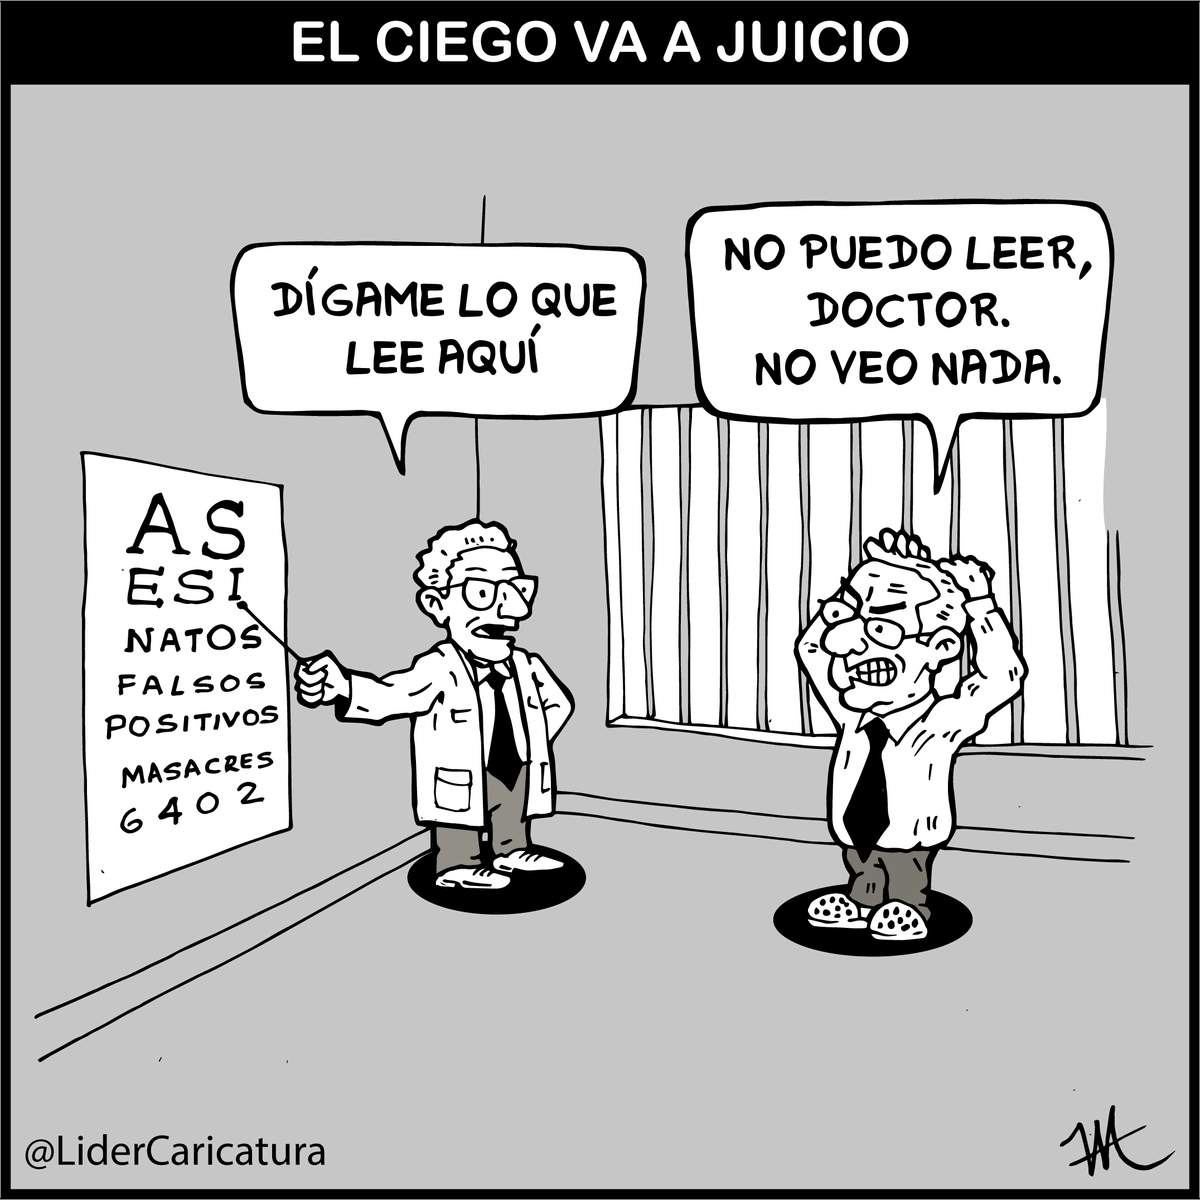 El expresidente Álvaro Uribe irá a juicio por acciones de Diego cadena que él nunca vio y la Fiscalía de Barbosa tampoco #AlvaroUribesVelez  #Justicia #caricatura #CaricaturaDelDía #humorNegro #humor #FelizMiercoles